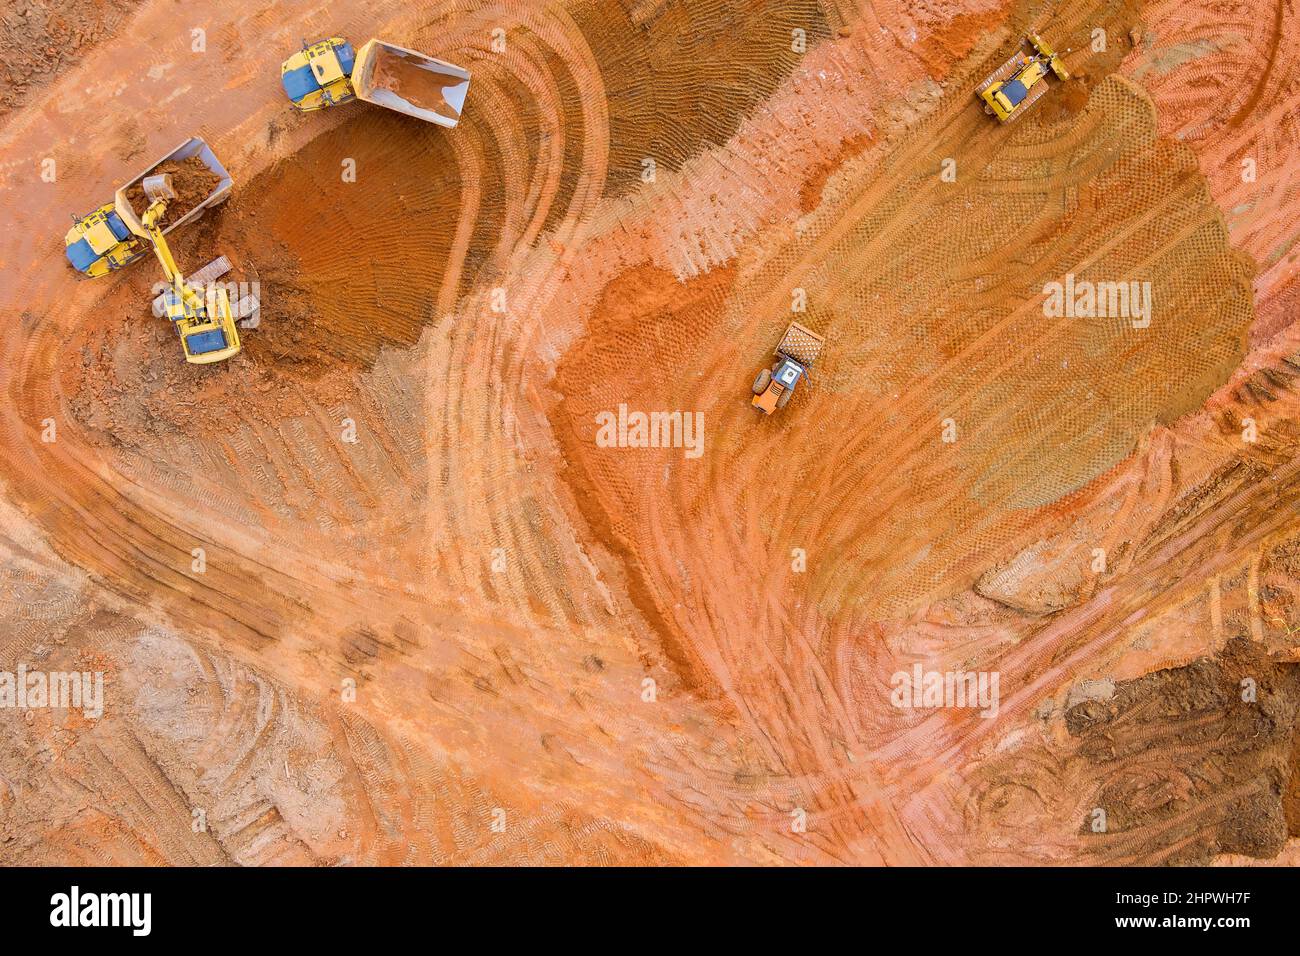 L'escavatore di macchinari per trattori pesanti allinea la terra facendo il paesaggio Foto Stock